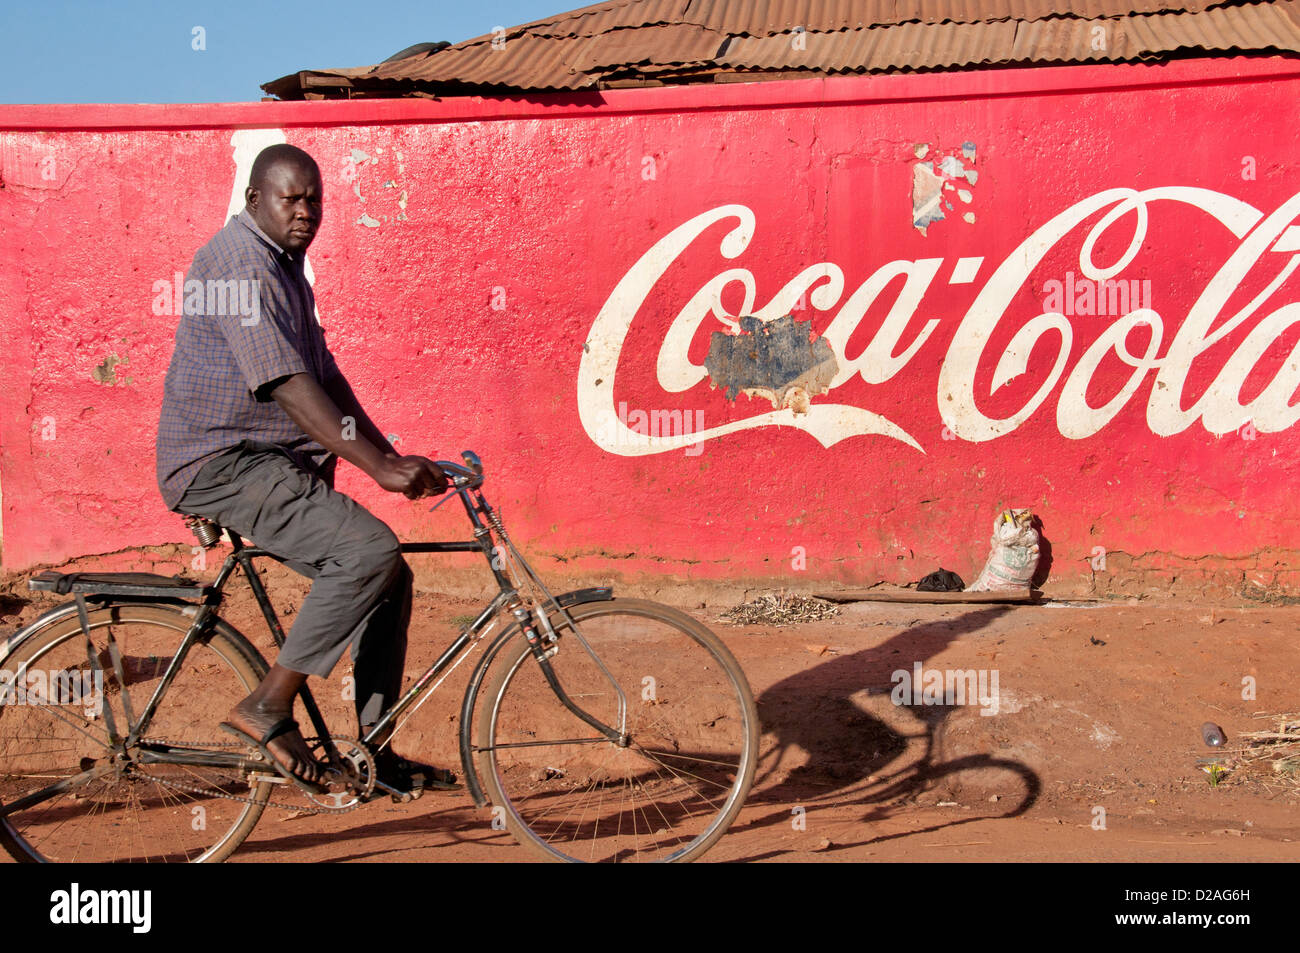 El norte de Uganda. Un hombre en una bicicleta ciclos pasados una pared pintada con un anuncio de Coca Cola en las primeras horas de la mañana el sol Foto de stock